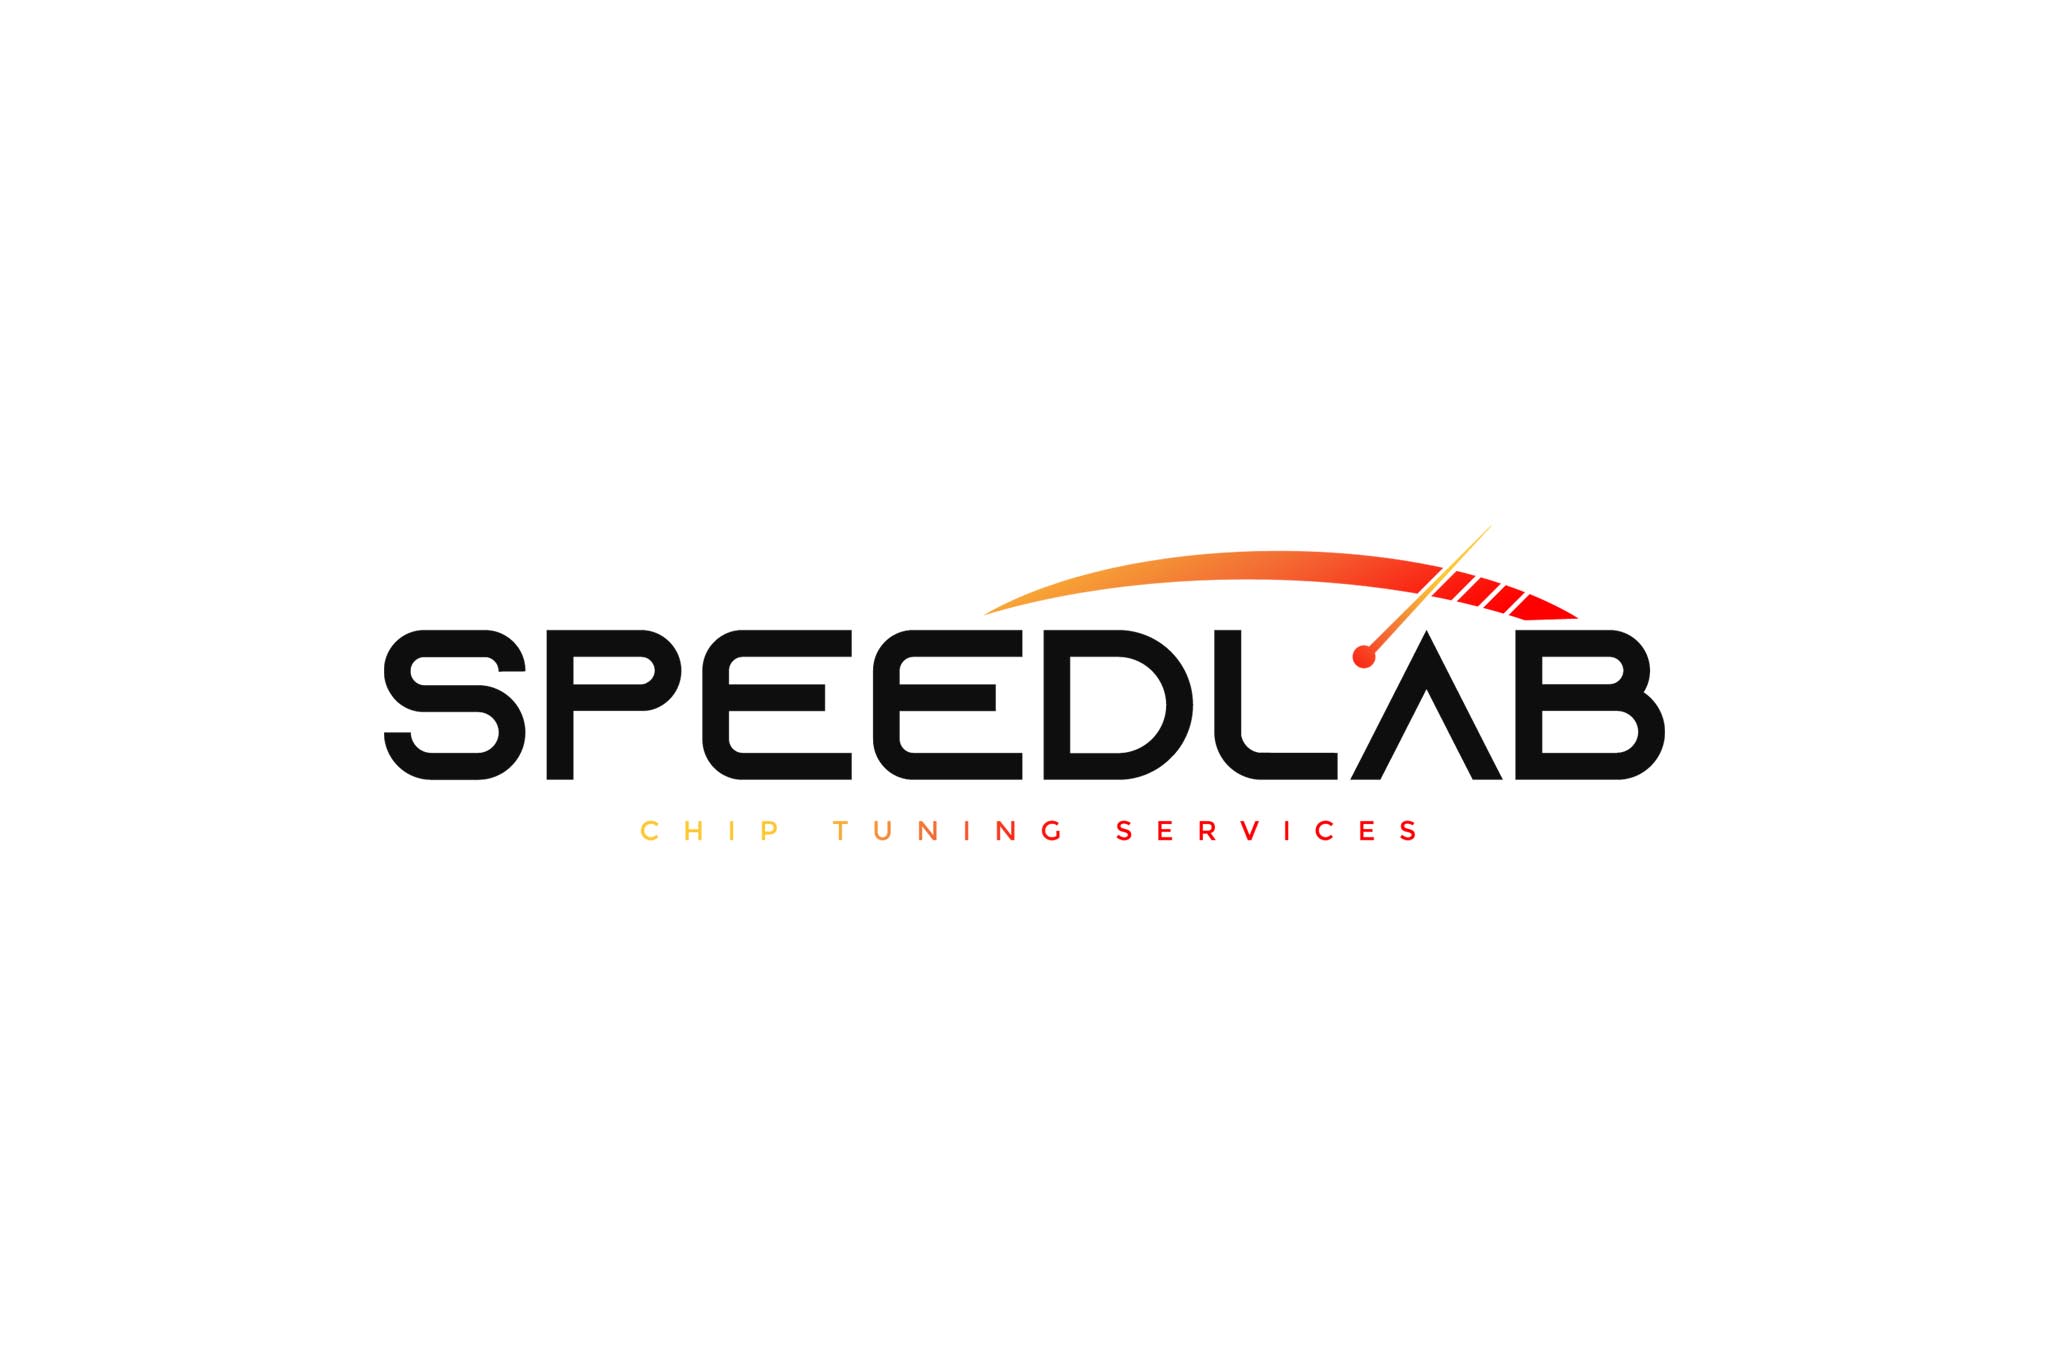 Speedlab Chip Tuning Services